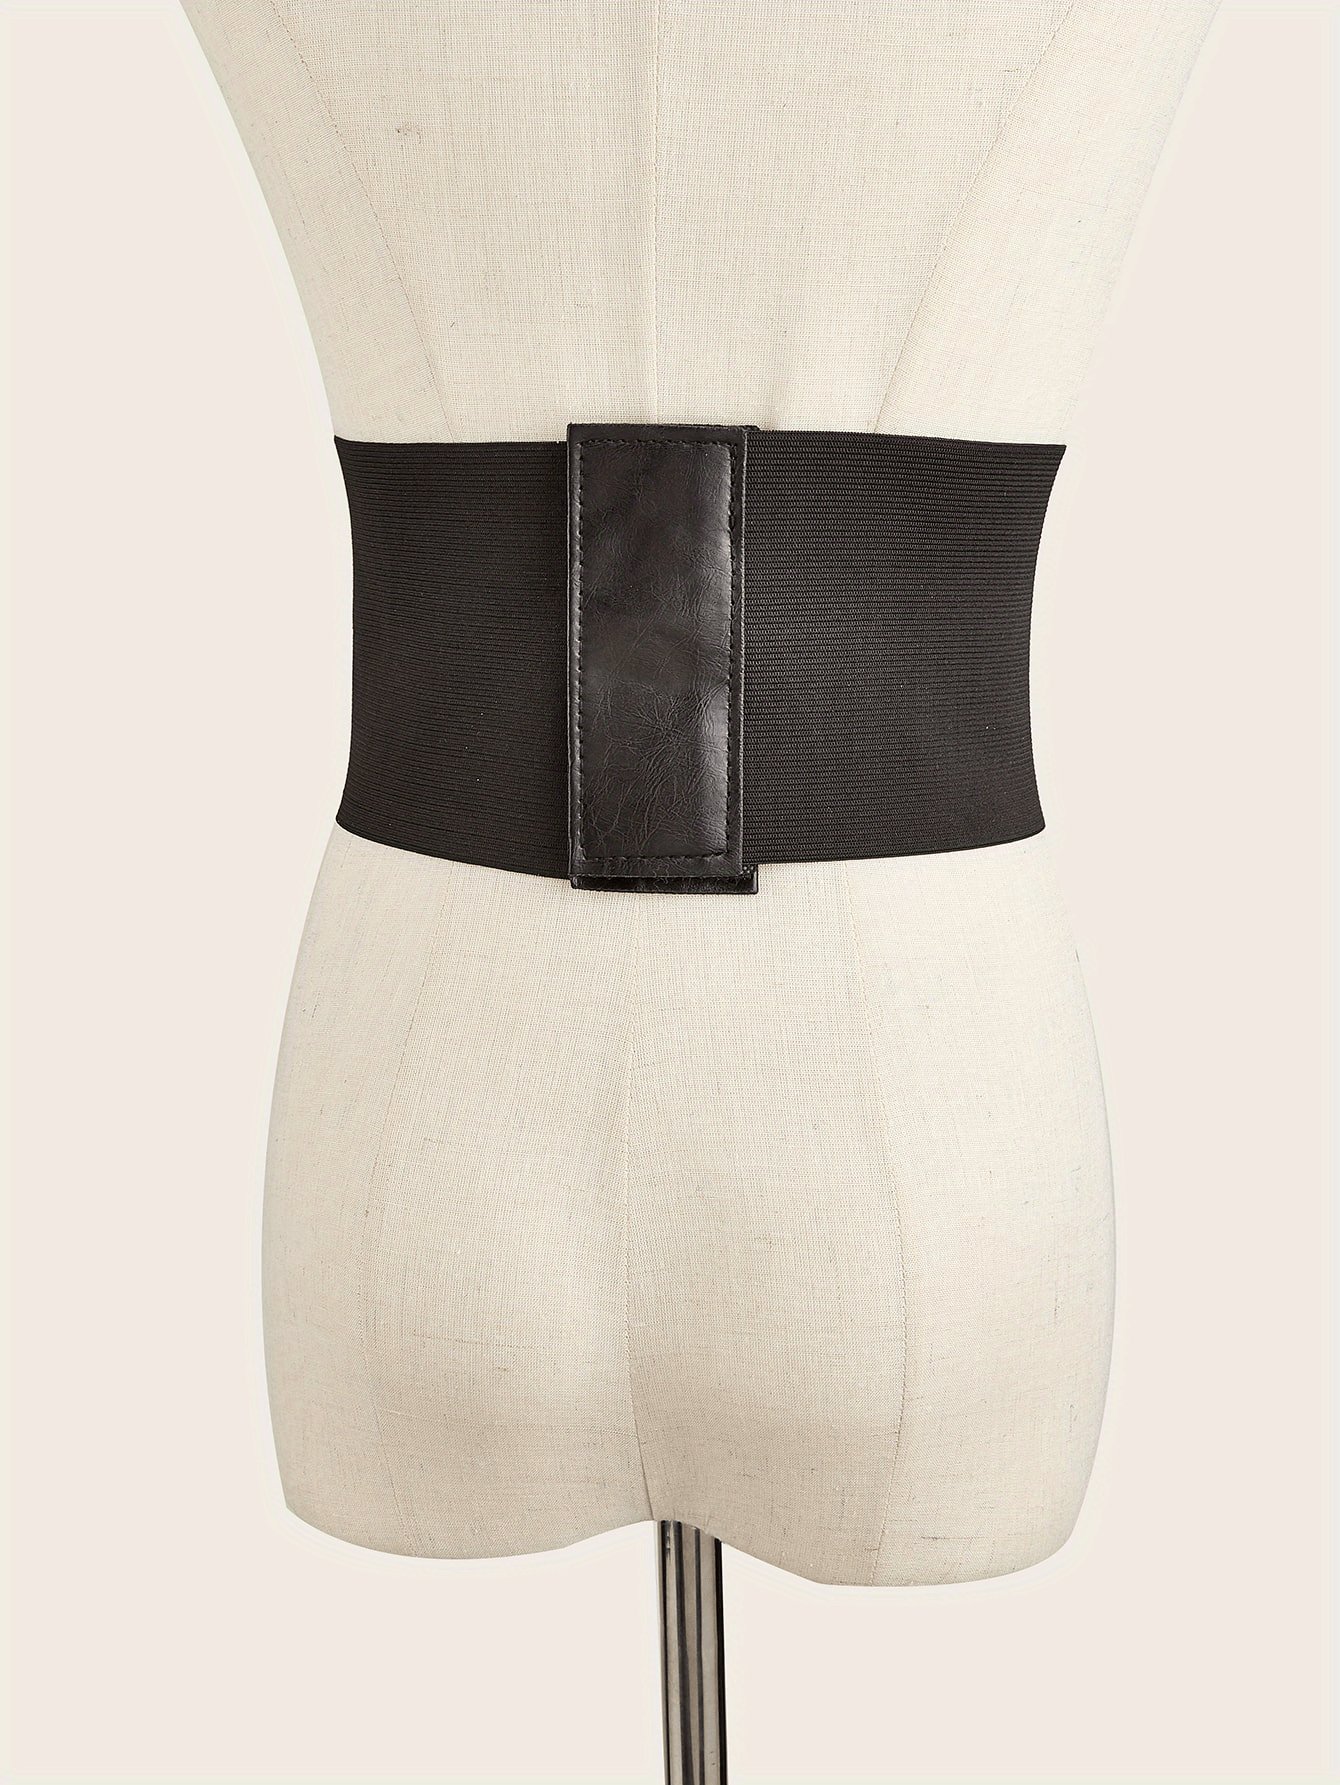 Elegante cinturón de cintura para mujer Faja Waspie Underbust Corset  Overbust Cinturón ancho para vestir, disfraz, adelgazar, dama, 80 CM  Baoblaze cinturón de corsé